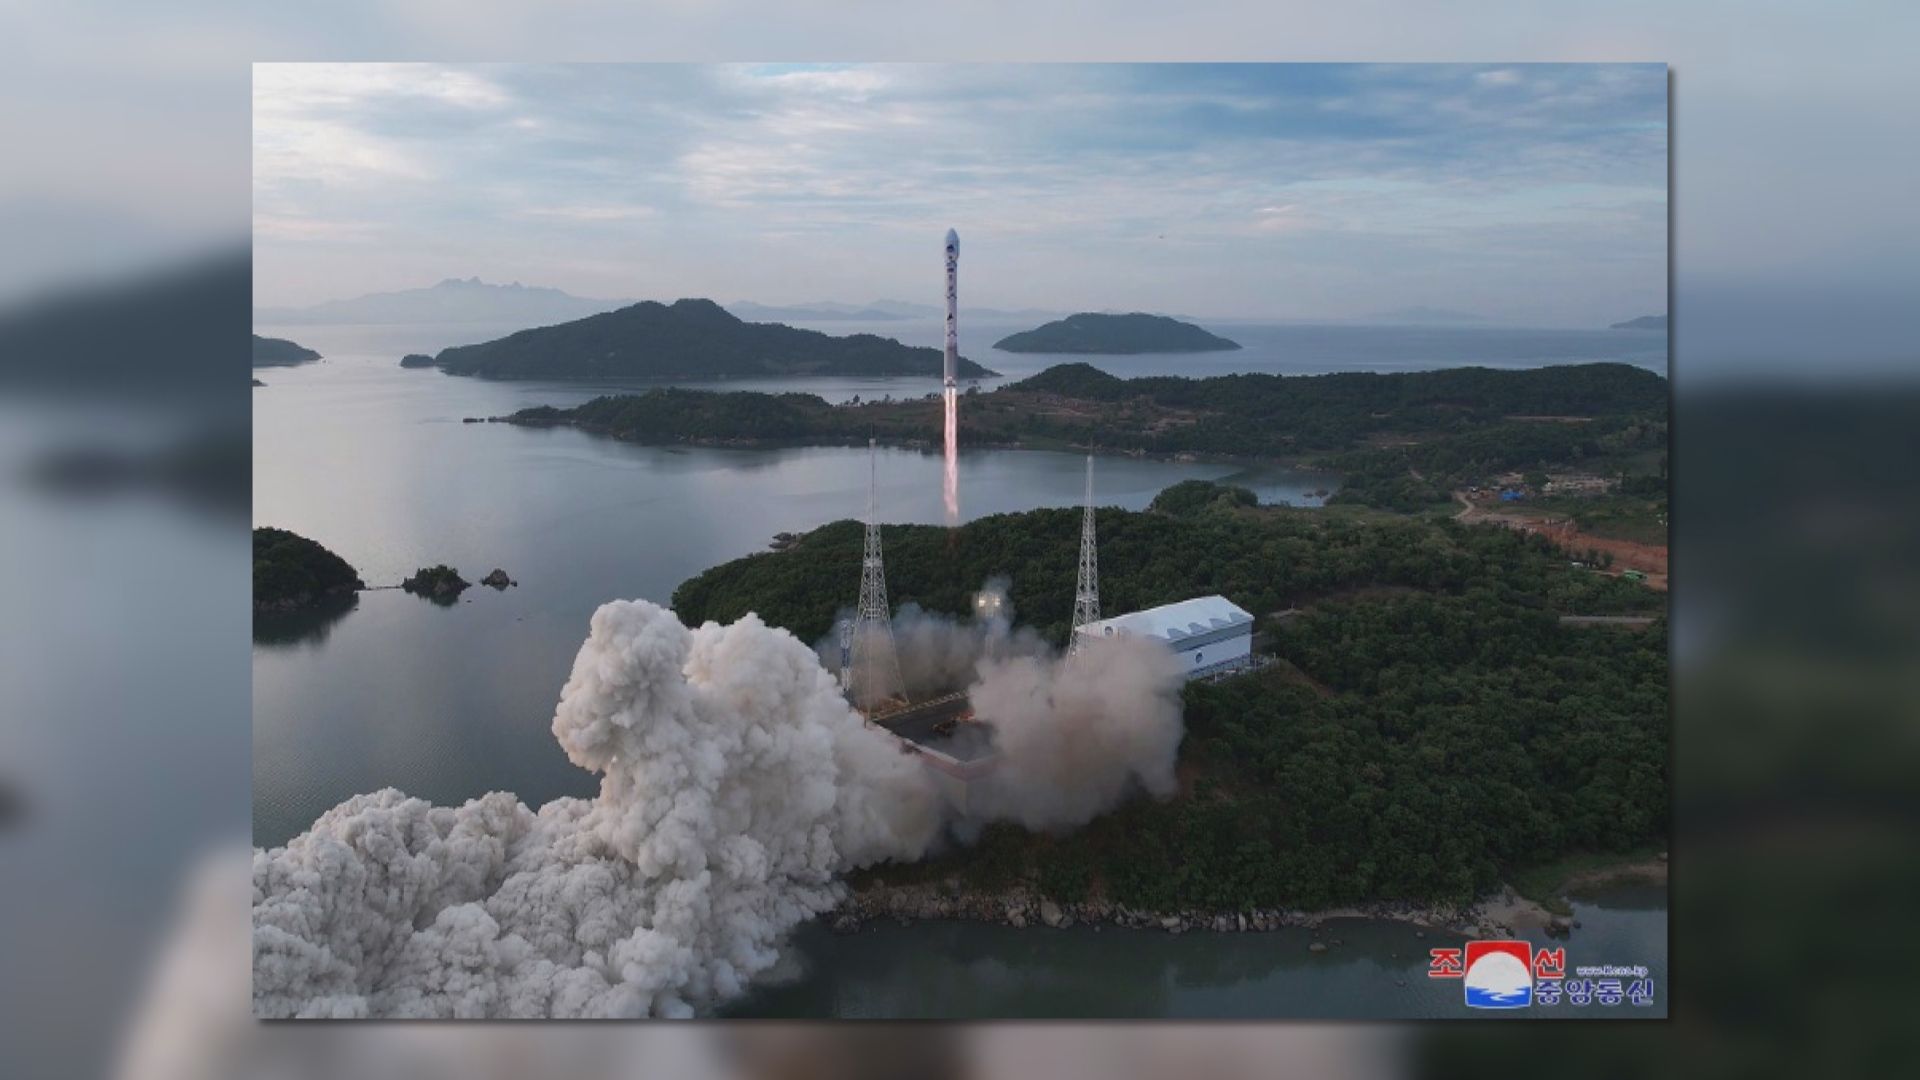 北韓發表軍事偵察衛星發射相片 金與正預告不日將衛星送入正確軌道